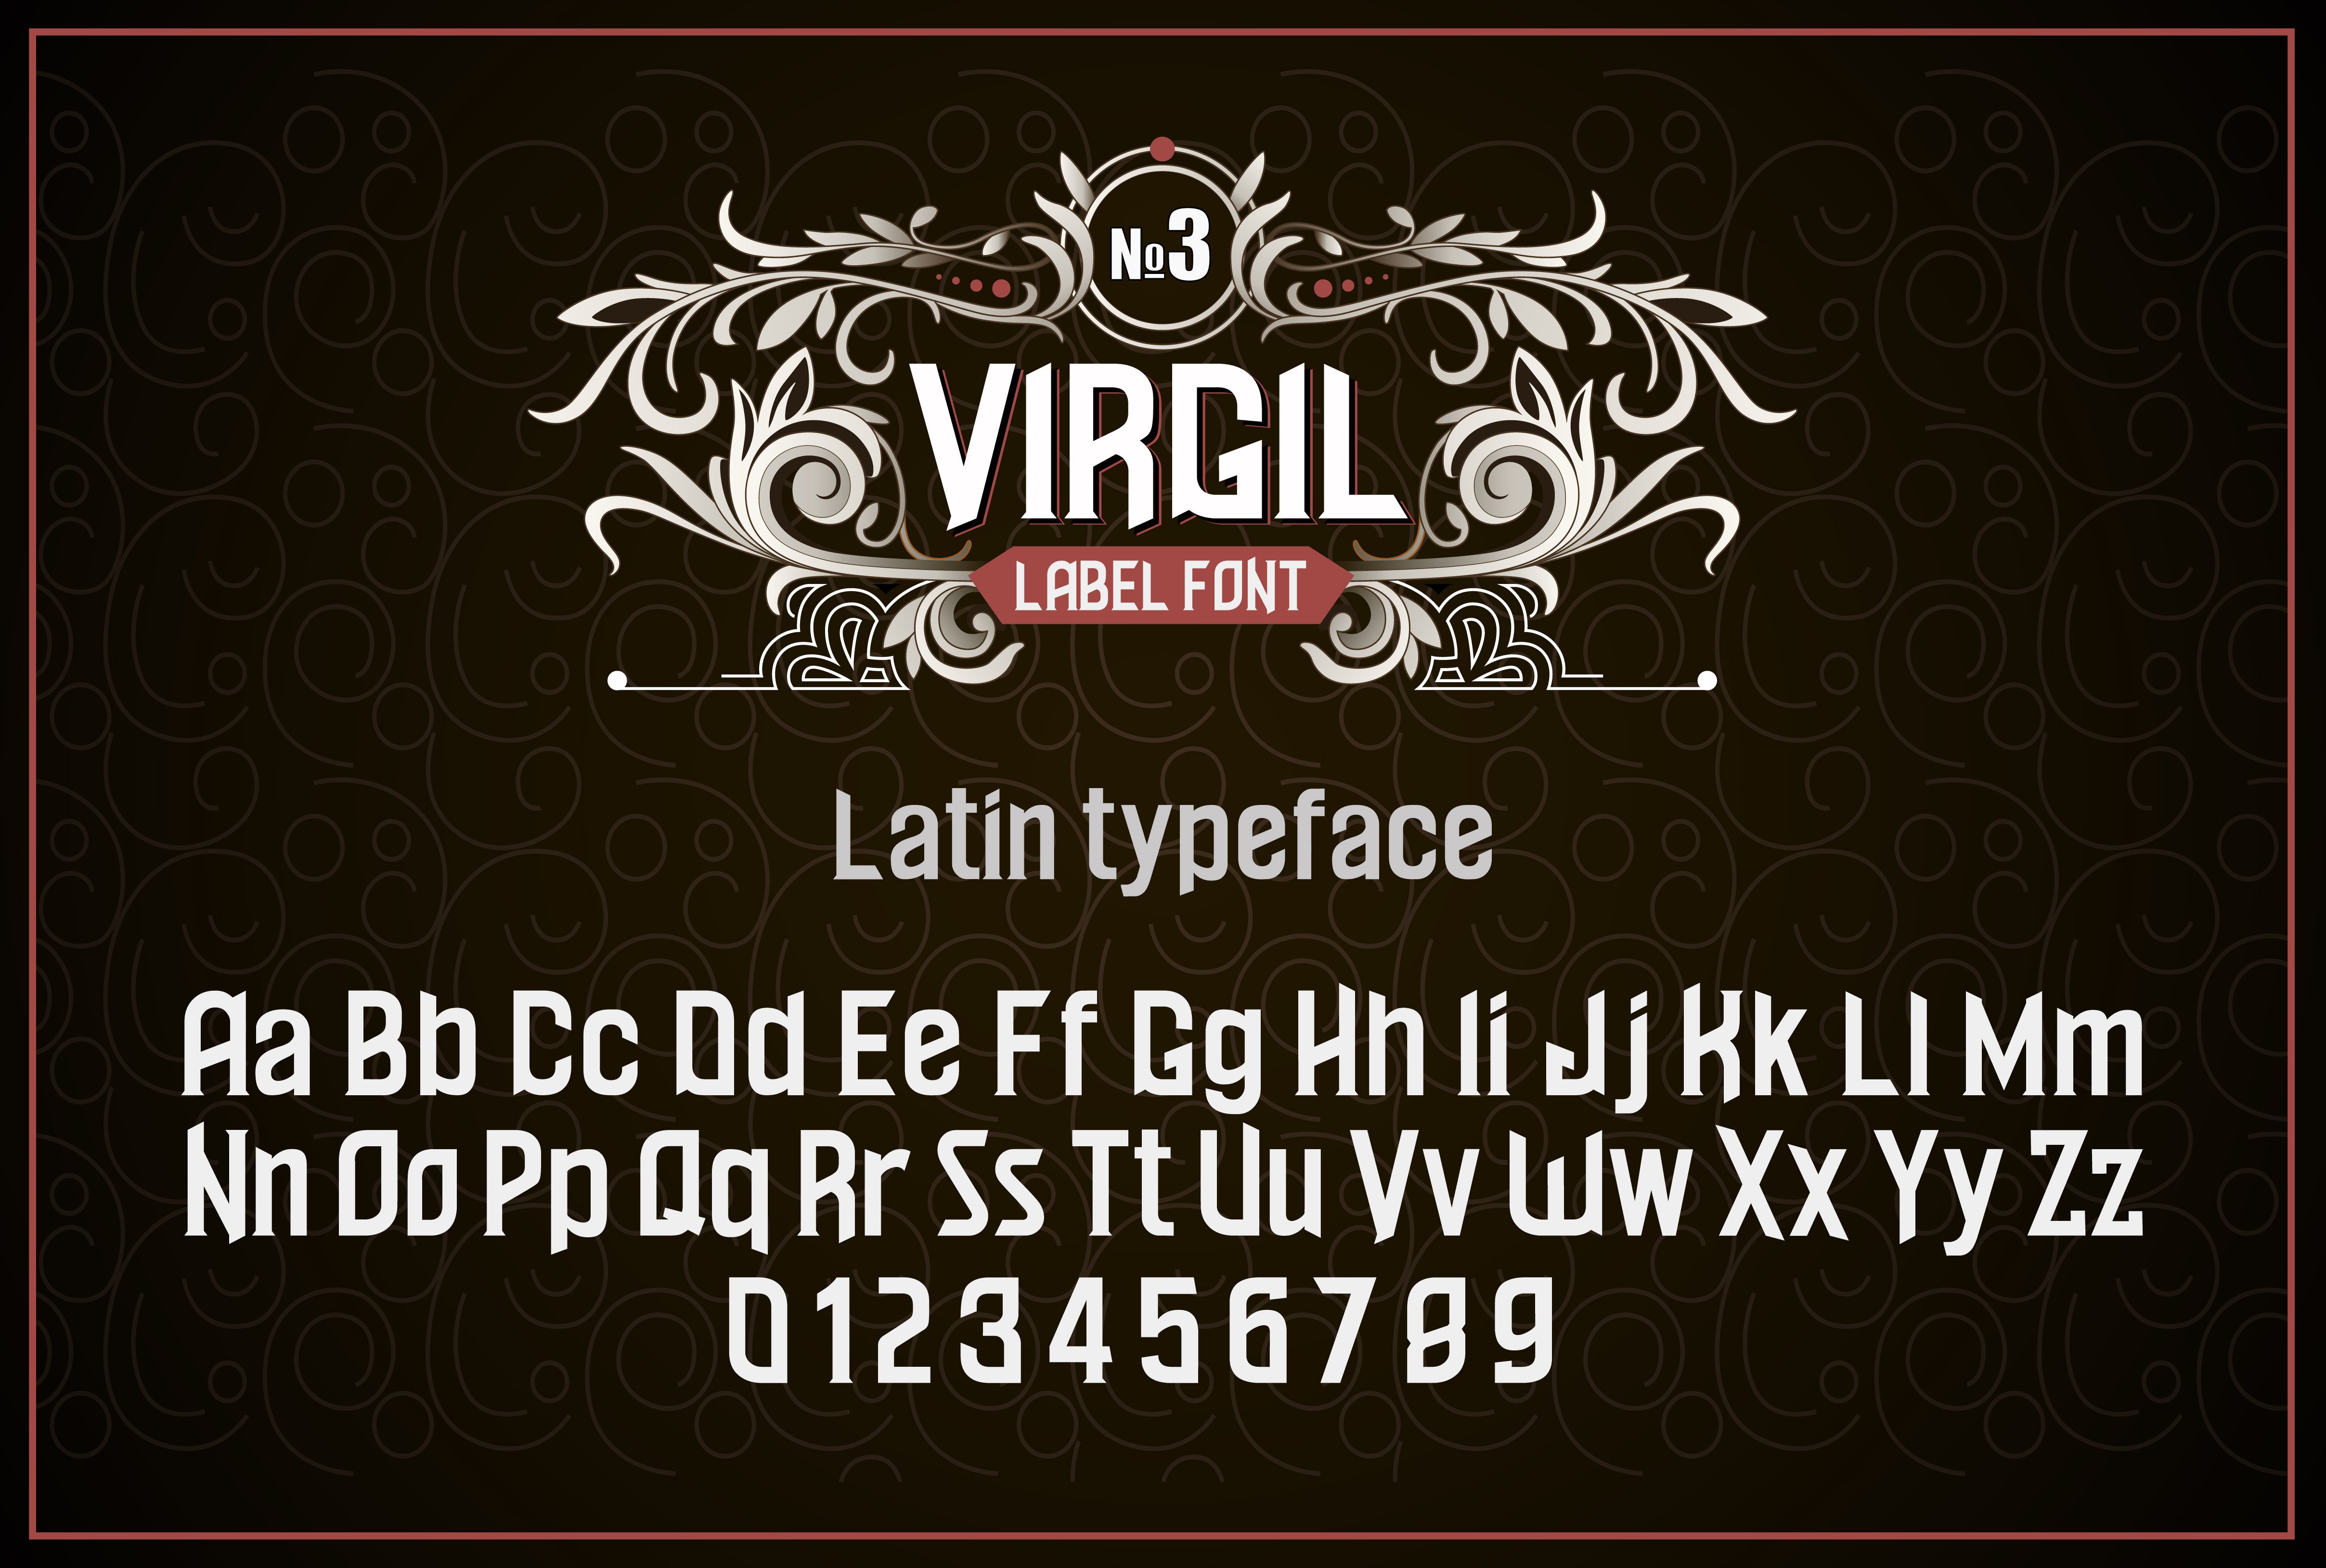 Vintage otf font "Virgil" preview image.